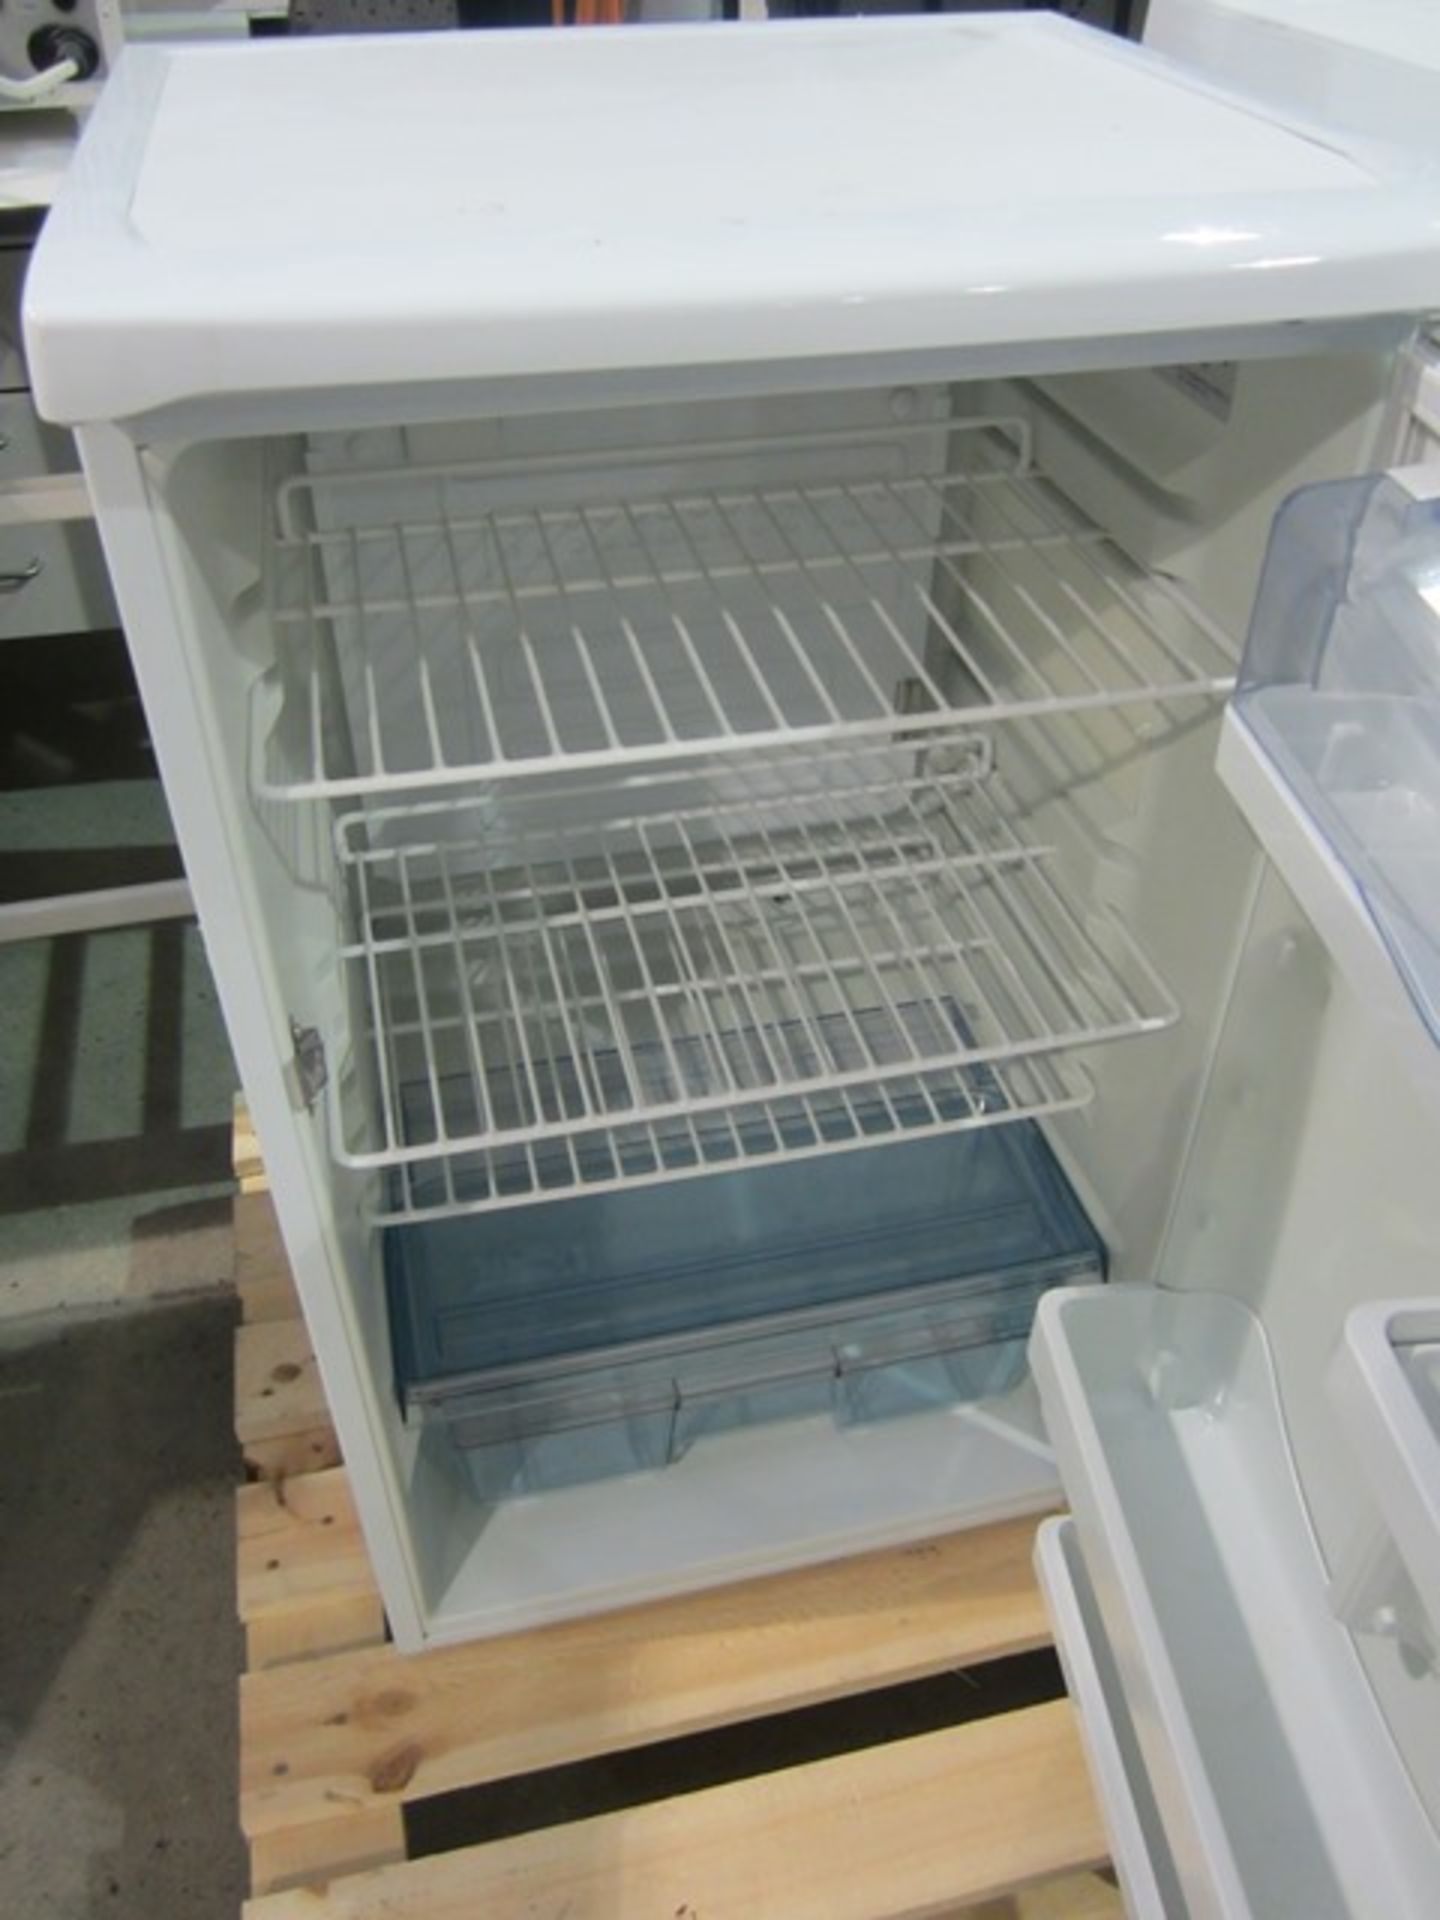 Labcold multishelf refrigerator - Image 2 of 2